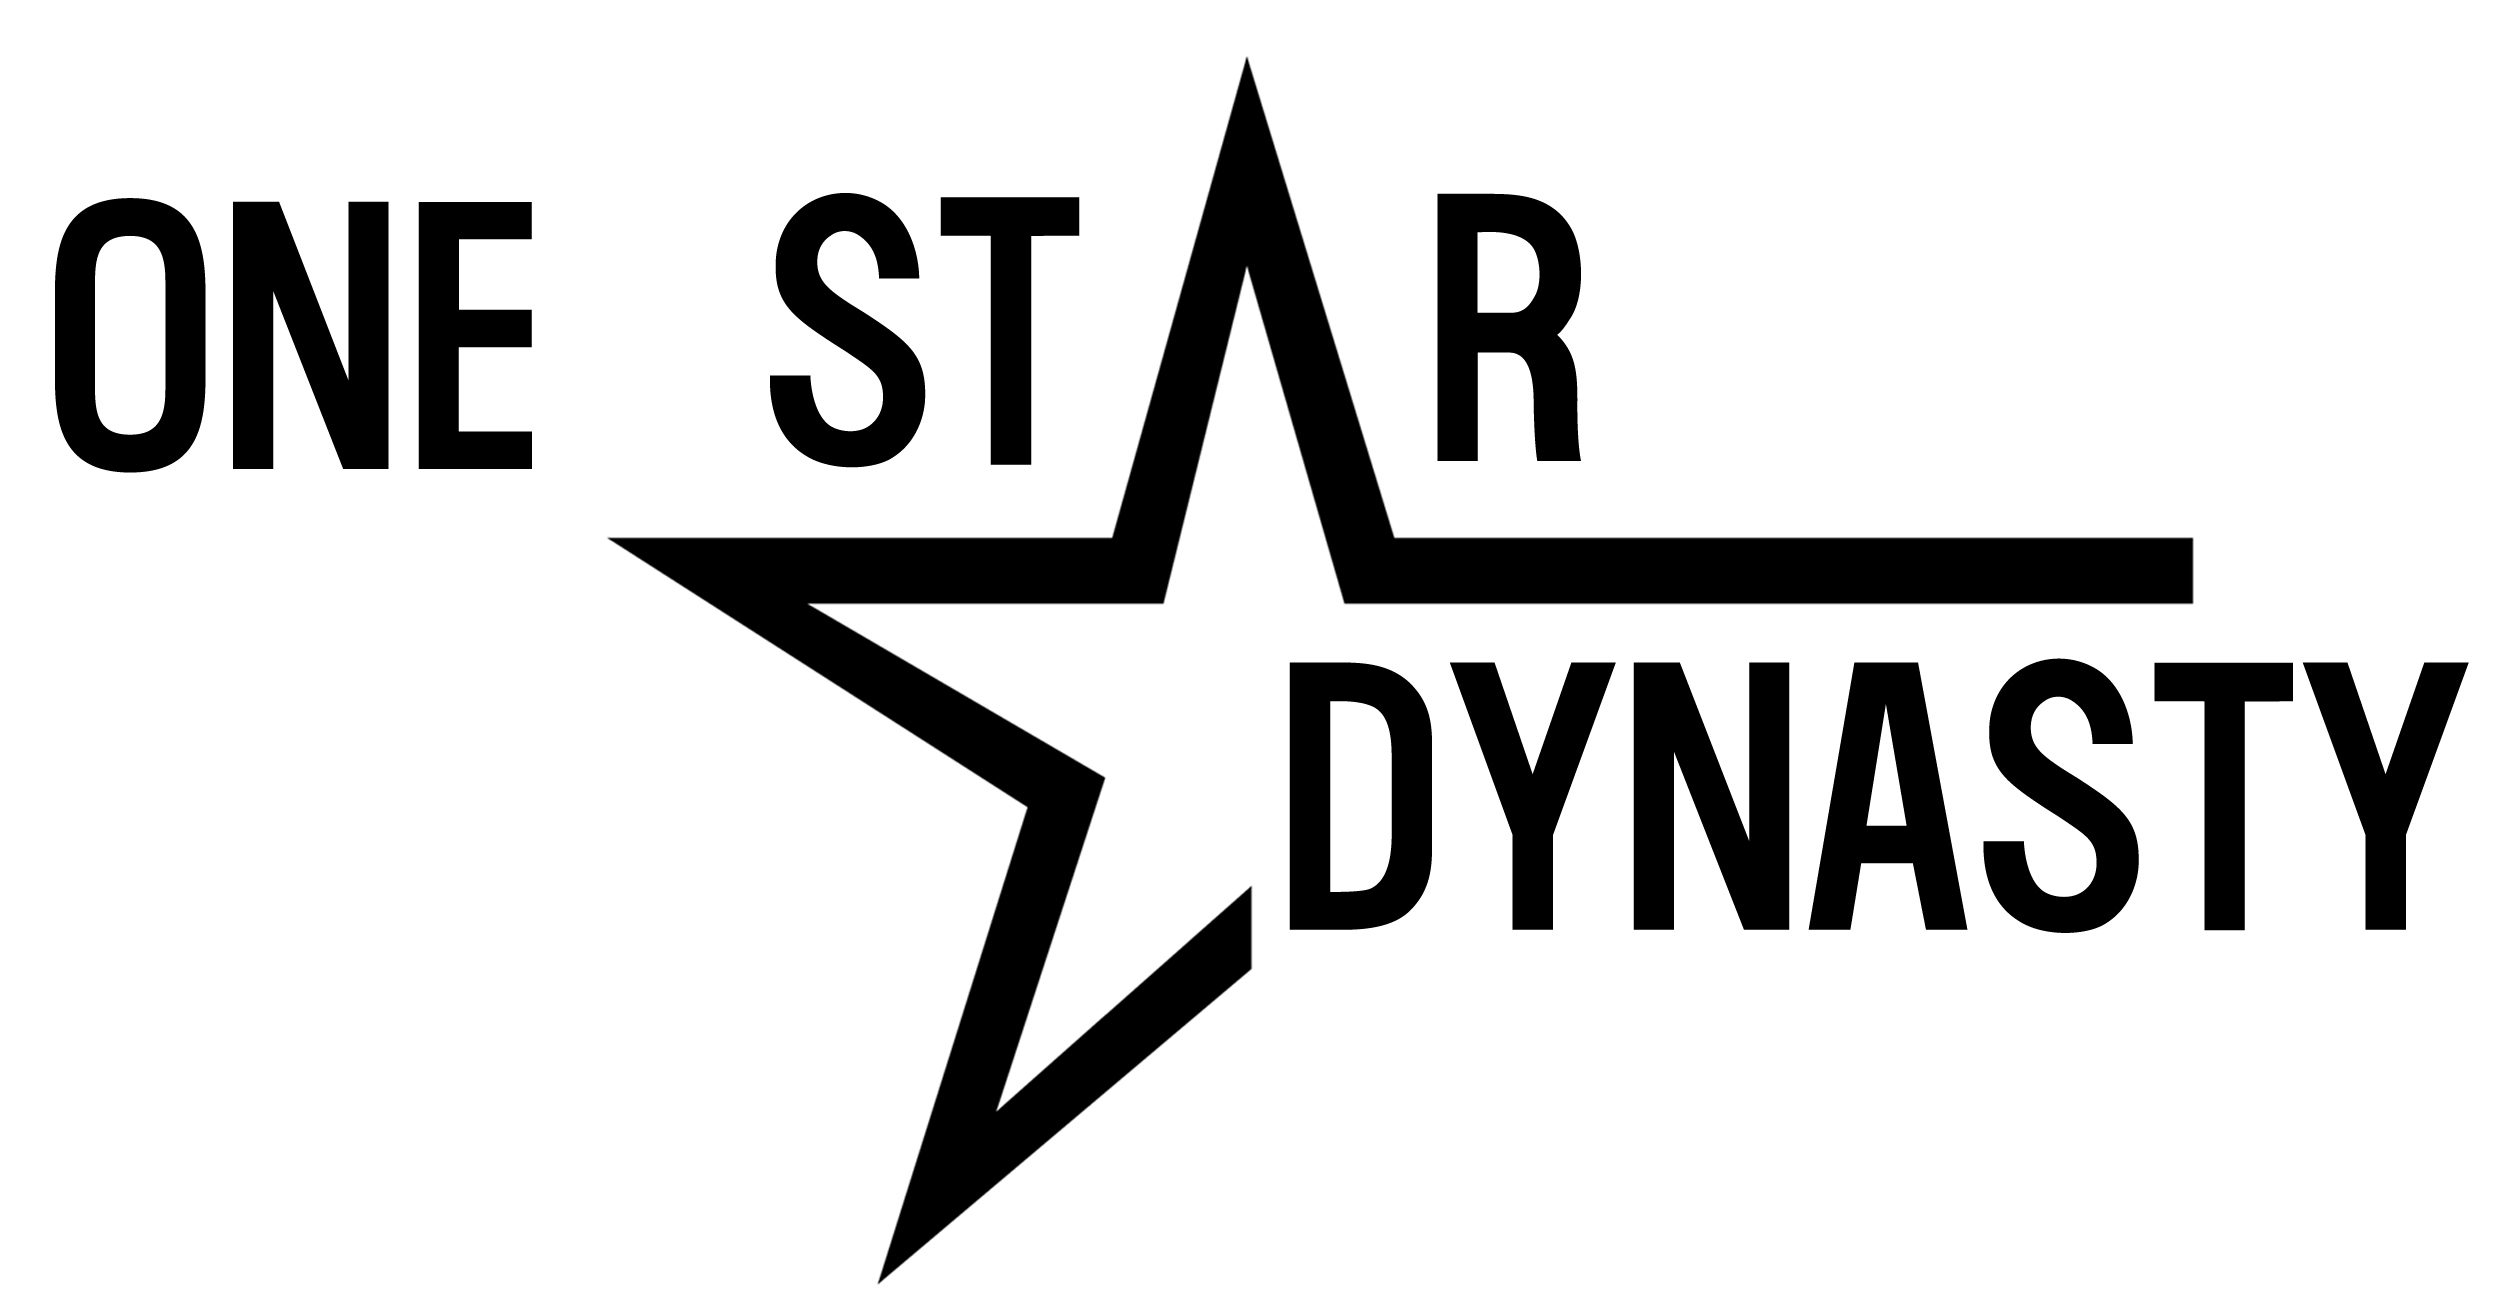 1 Star Dynasty